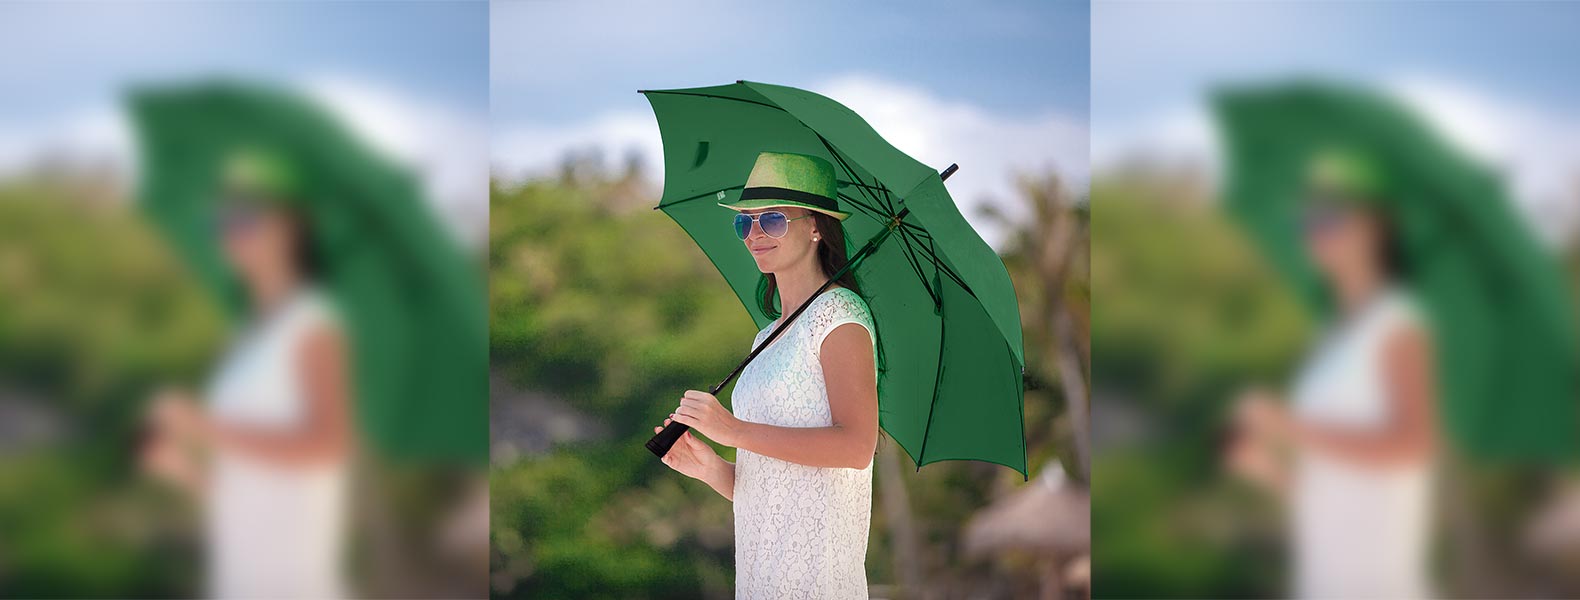 Guarda-chuva em Seda Sintética verde automático com haste em Fibra de Vidro 14mm e empunhadura reta em ABS.